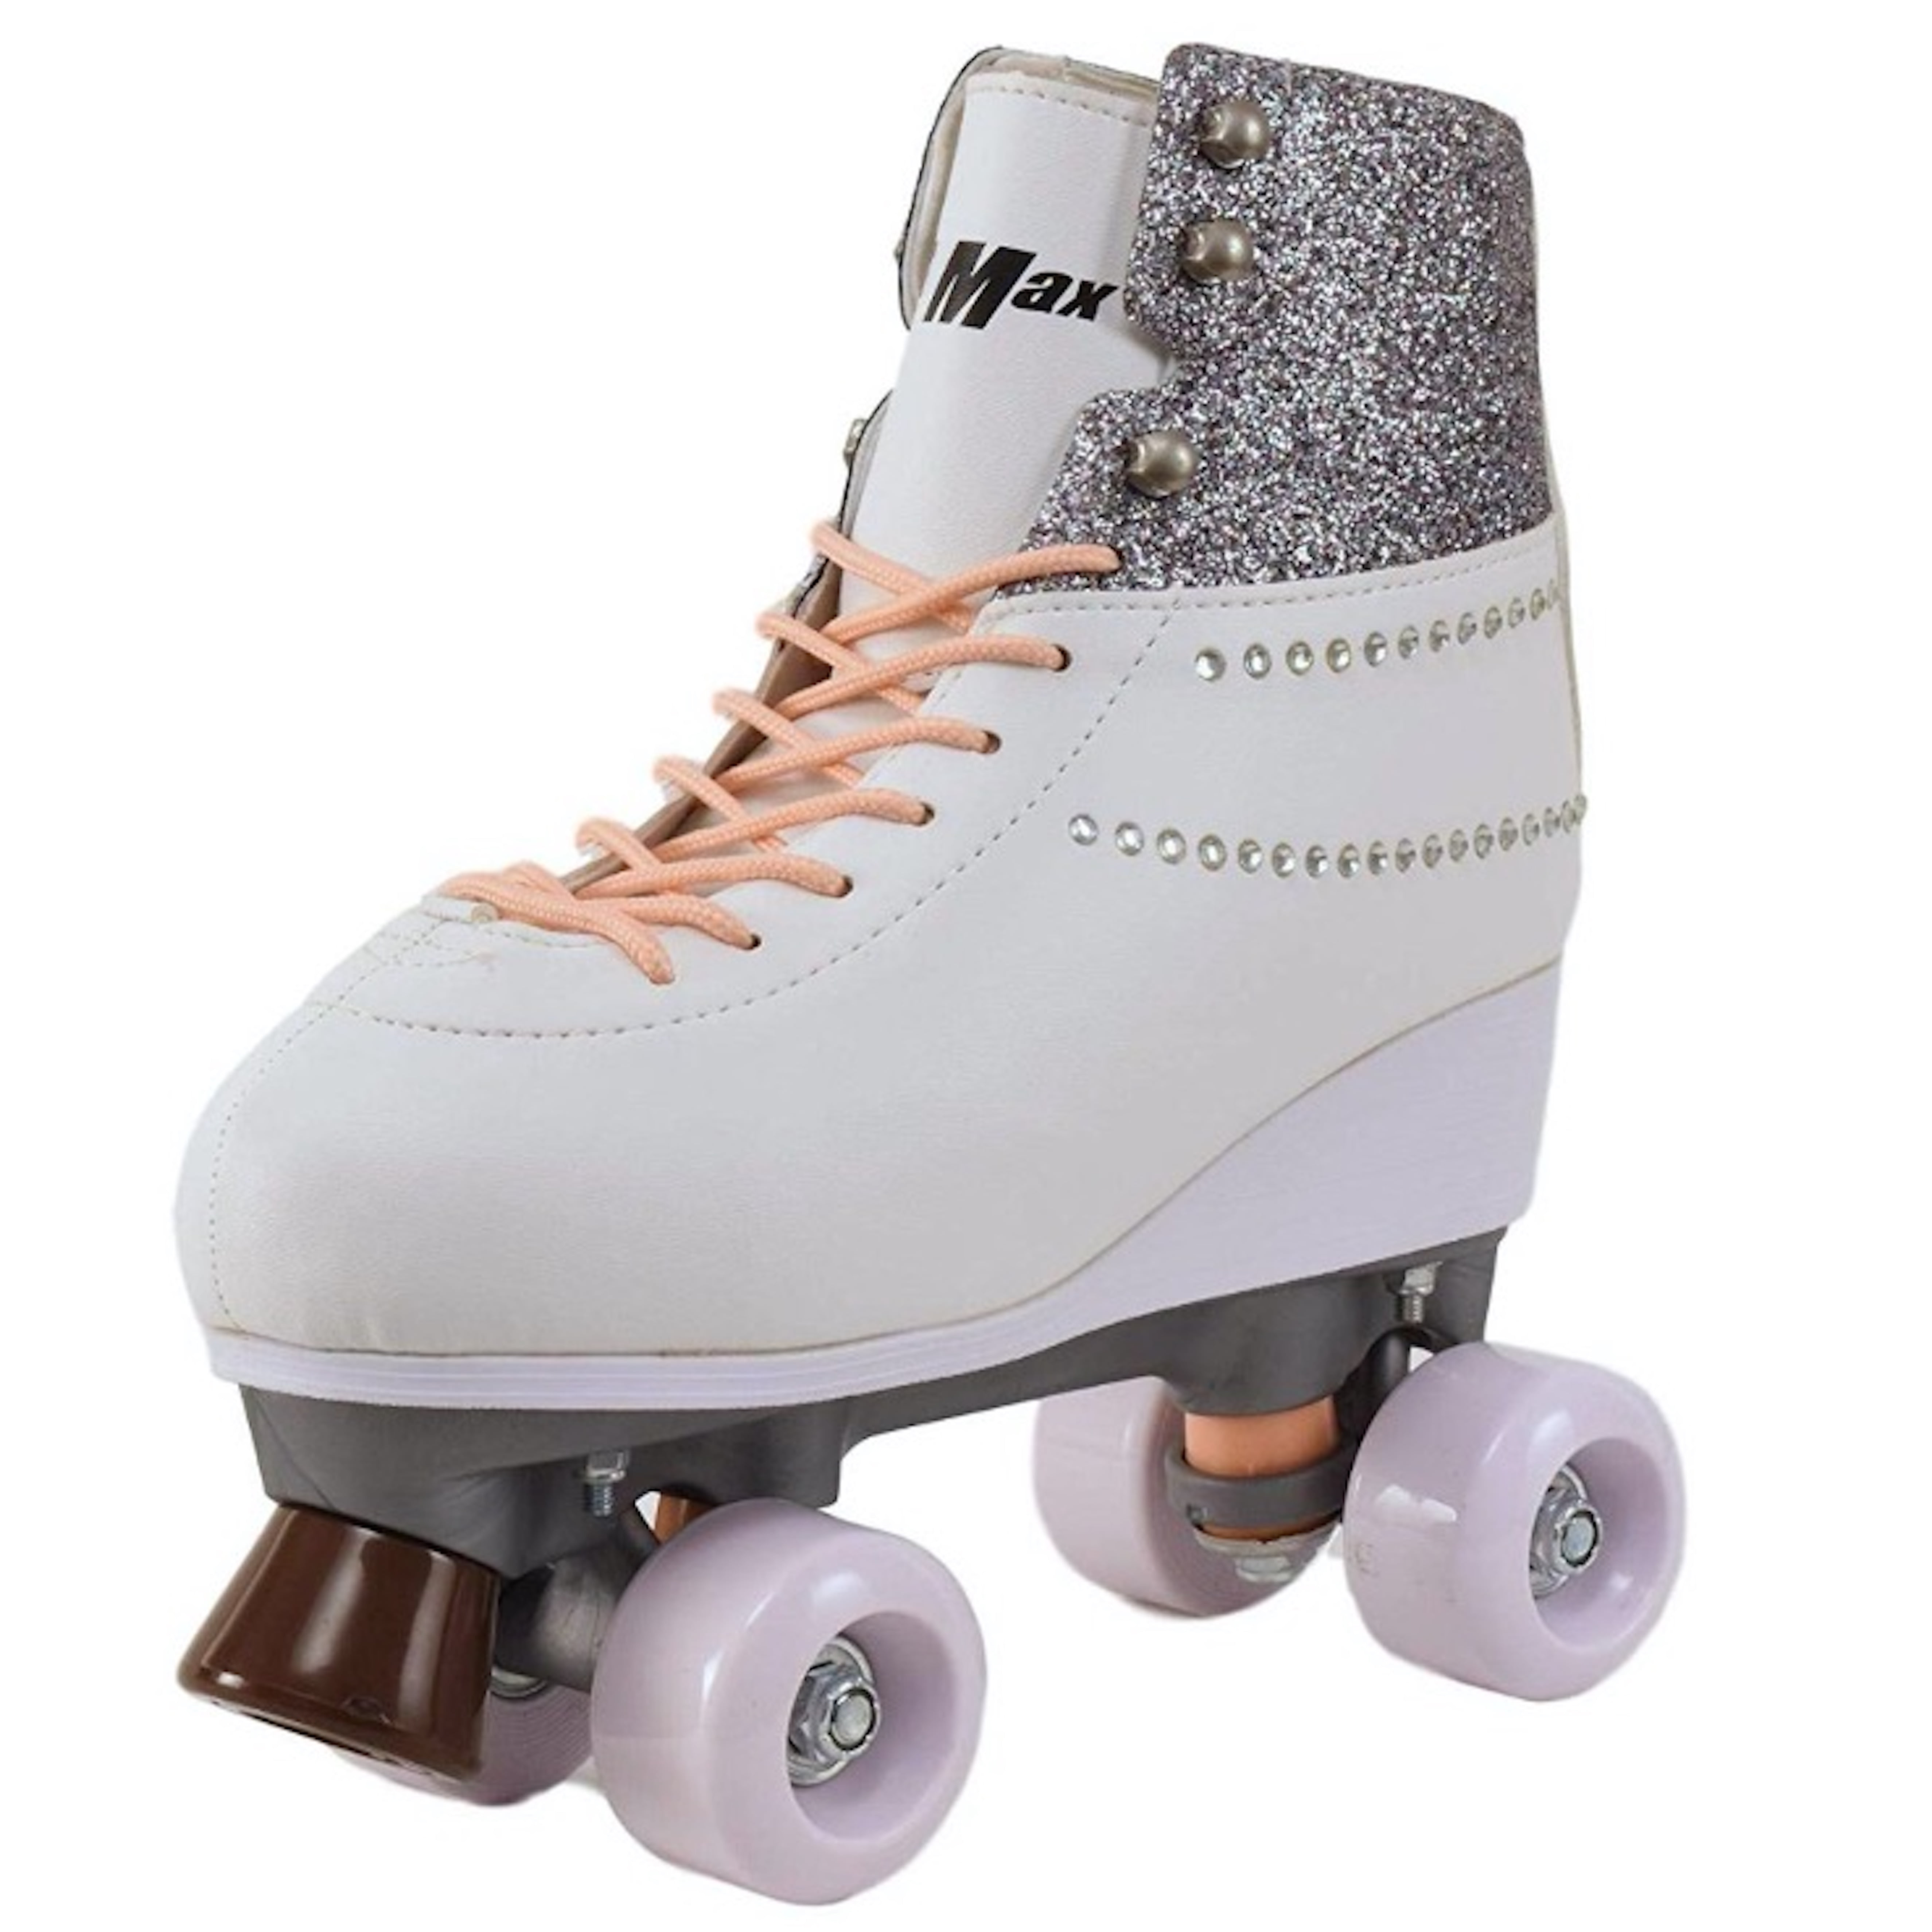 Pacer GTX 500 White/Pink Roller Skates Kids sz 2 Quad $75 value NEW 